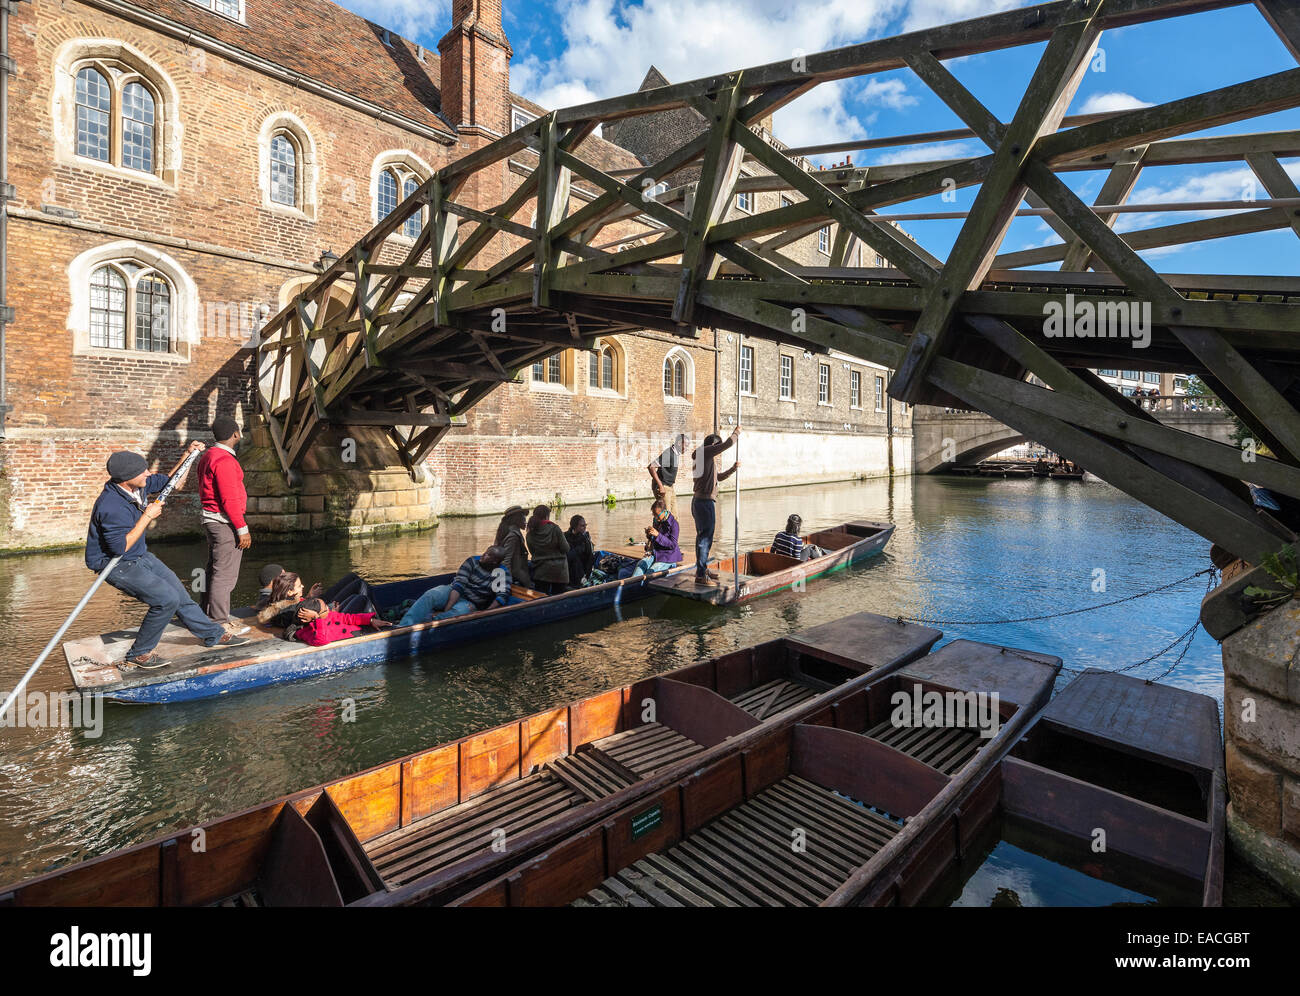 Cambridge Mathematical Bridge über den Fluss Cam am Queens' College, mit Touristen und Studenten Stechkahn fahren, polling in Booten. Stockfoto